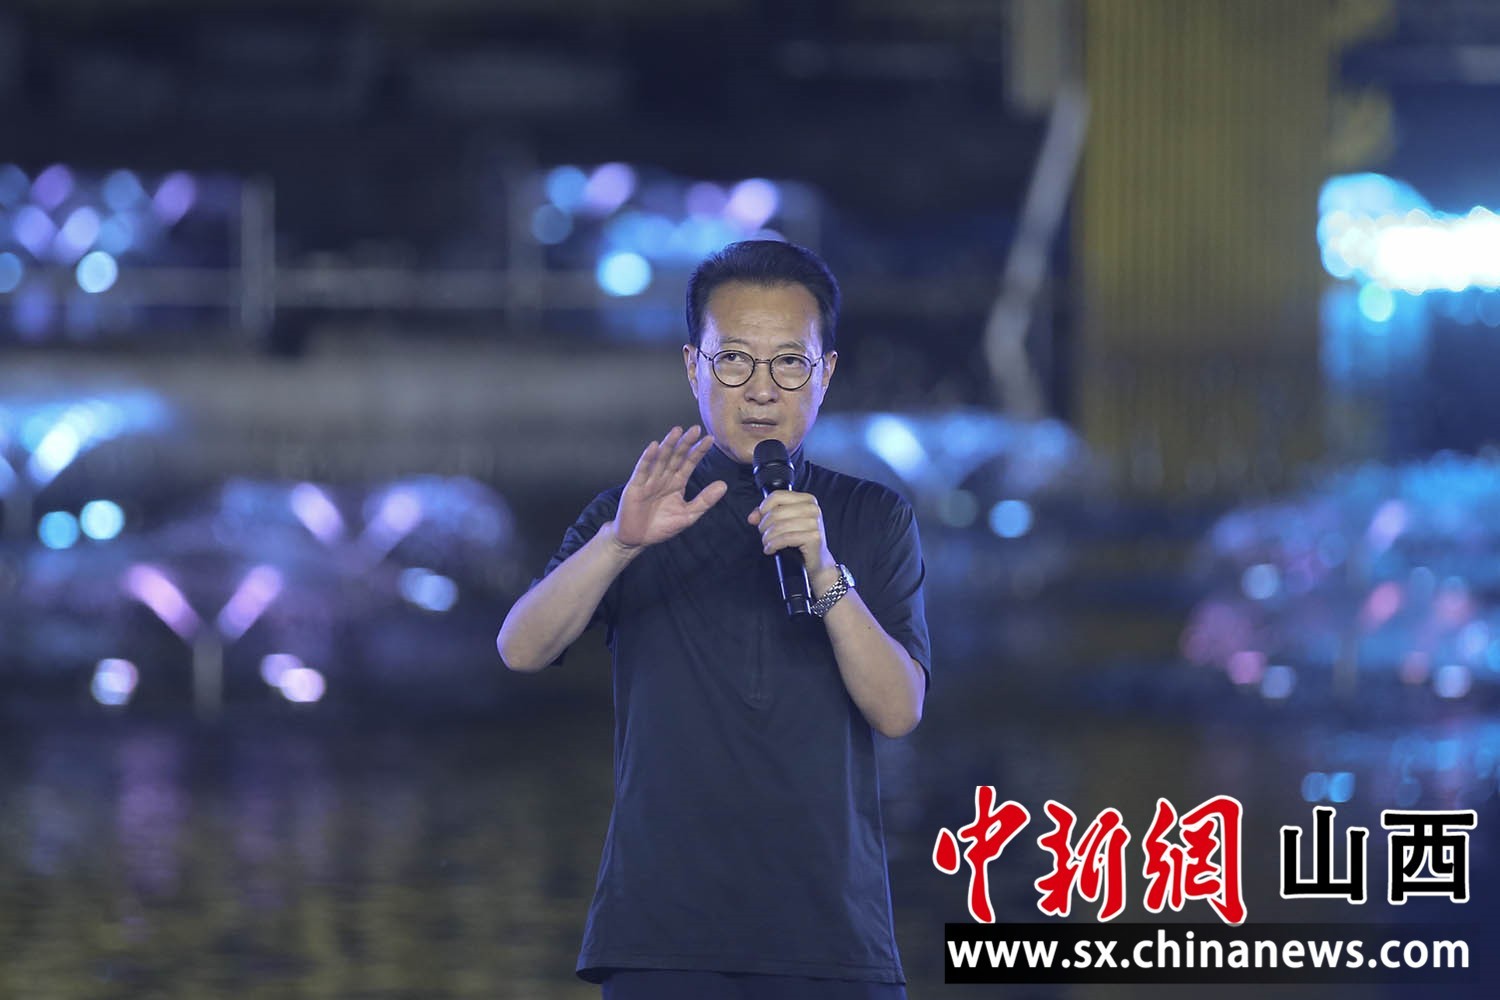 著名艺术家张继钢出席超大型梦幻喷泉巡游表演《寻梦莲花湾》新闻发布会。